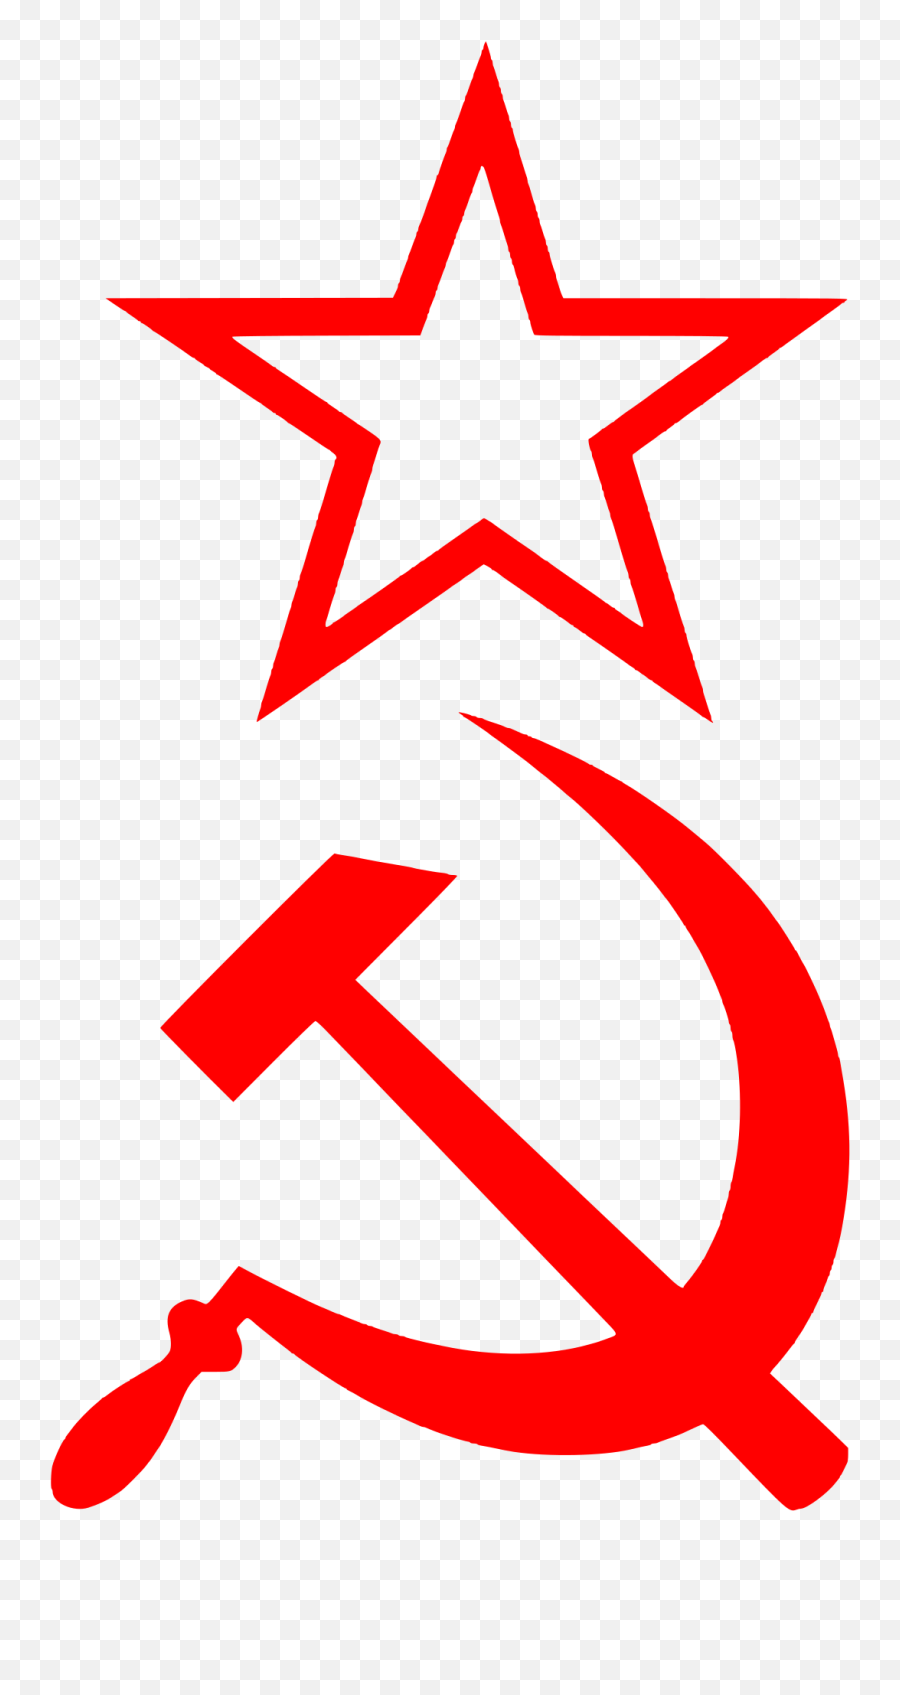 Hammer Sickle Star Red - Black Transparent Communist Symbol Emoji,Hammer And Sickle Made Out Of Hammer And Sickle Emojis